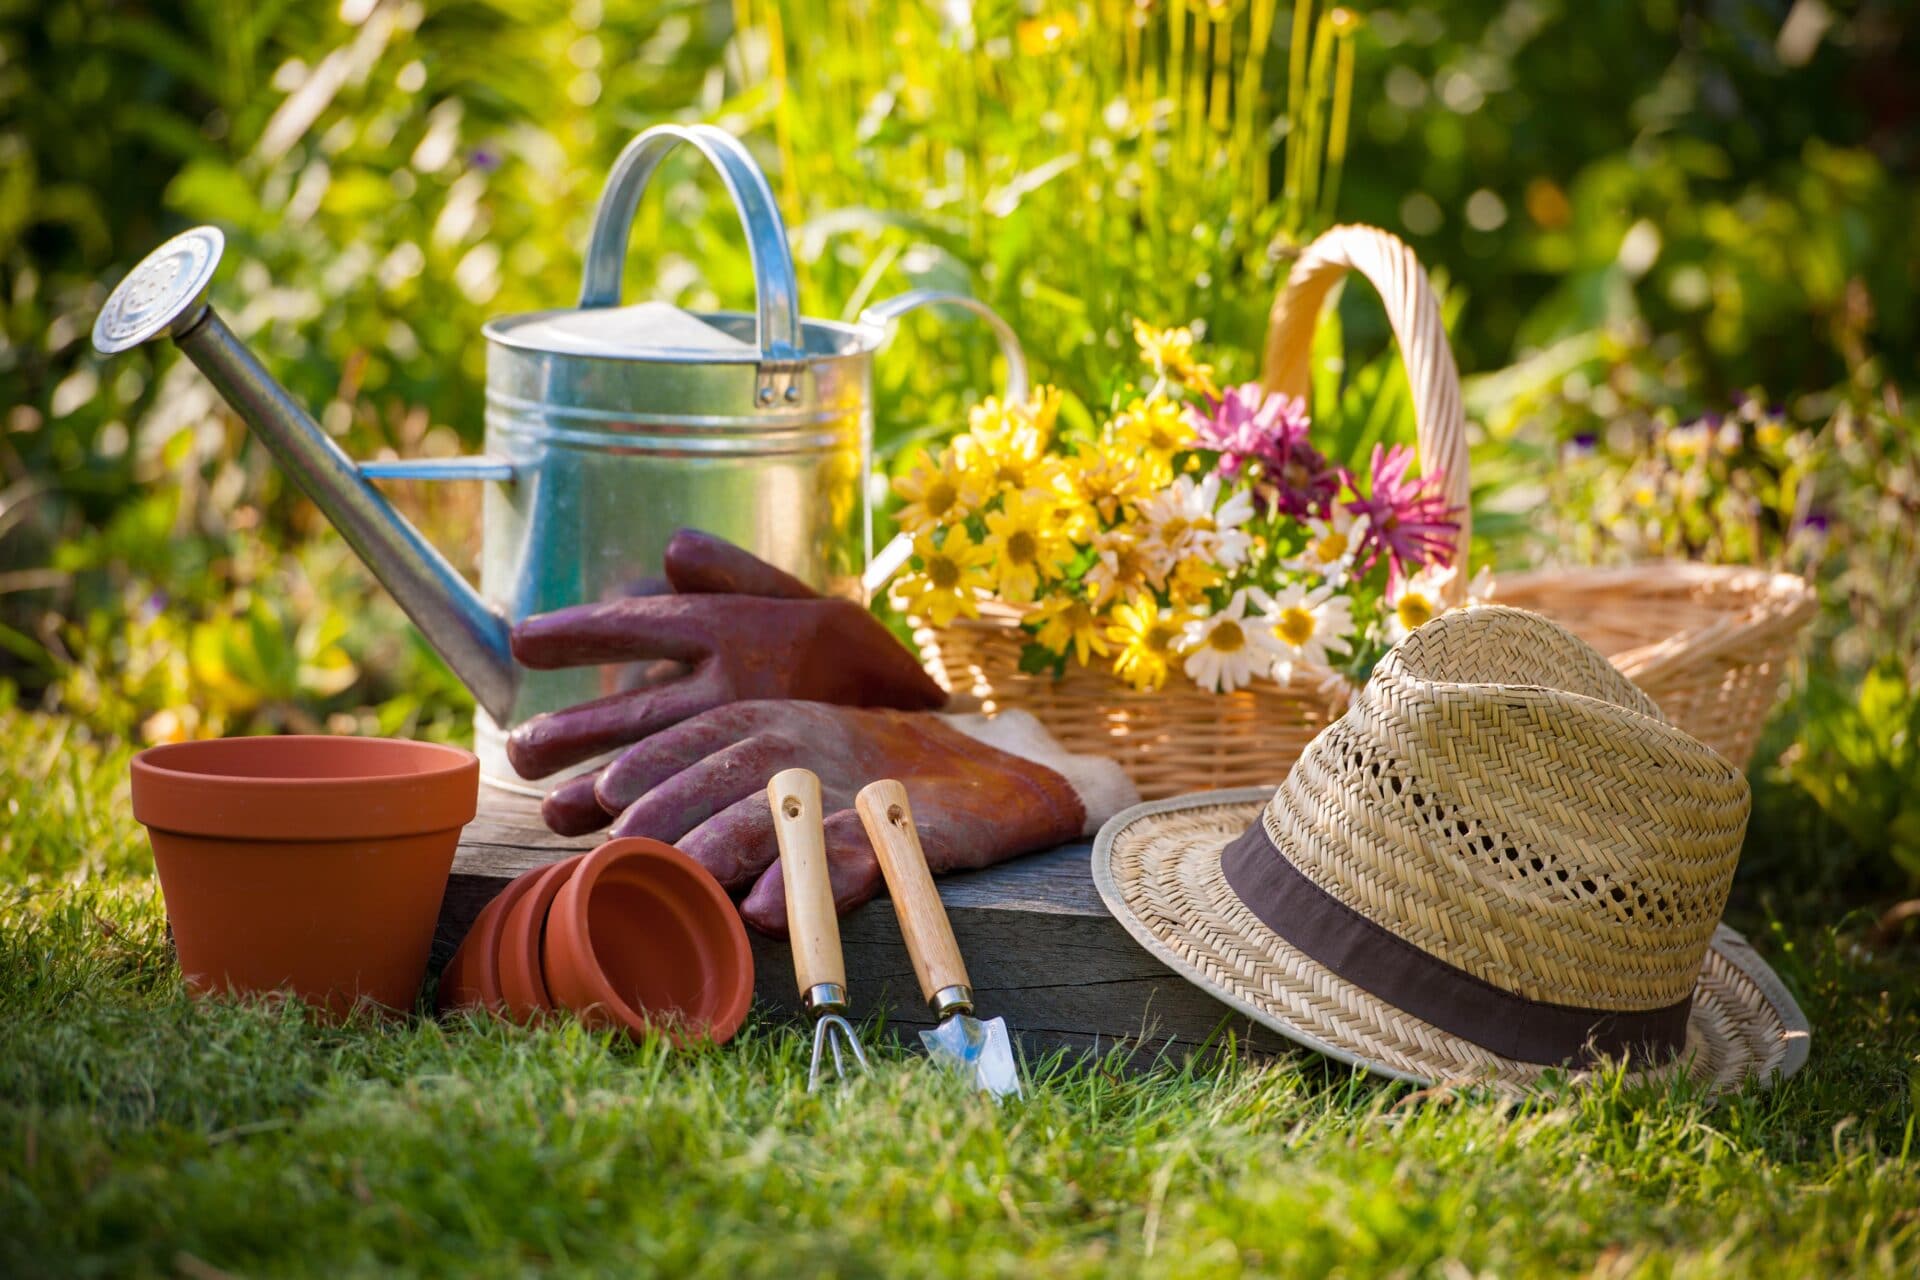 Outils de jardnage sur la pelouse: pelle, pots, chapeau,arrosoir et panier contenant des fleurs